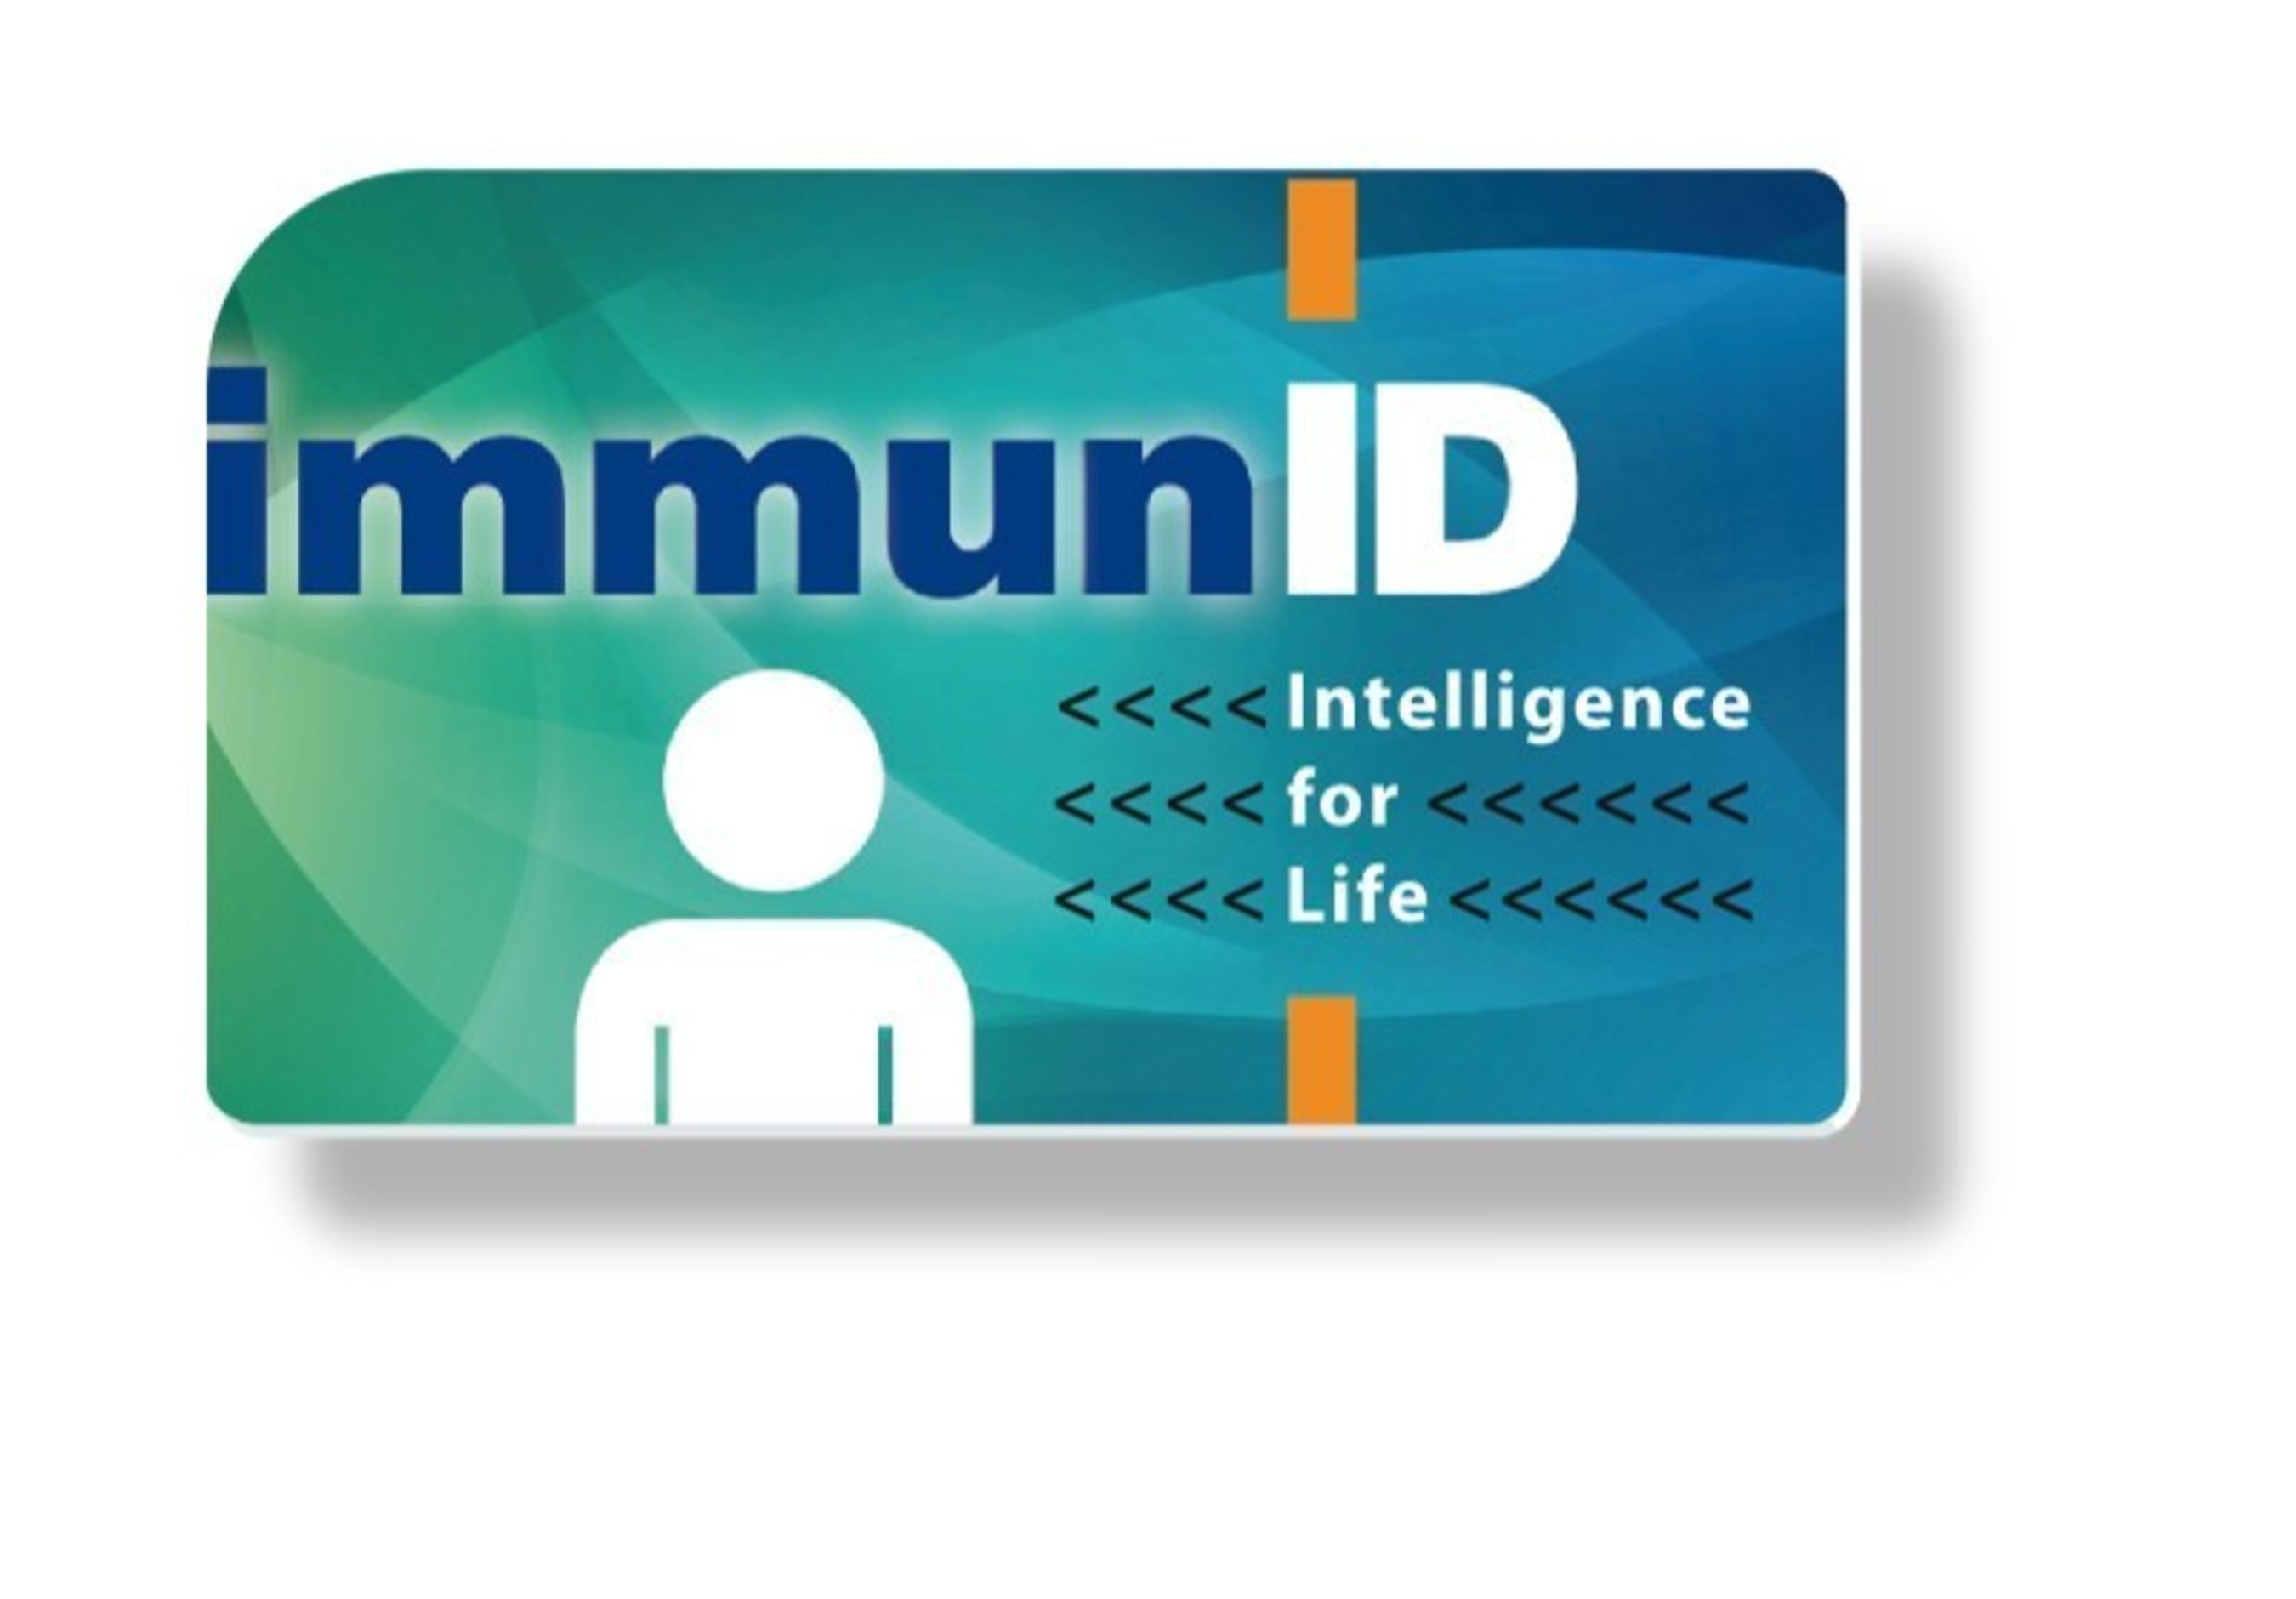 ImmunID logo